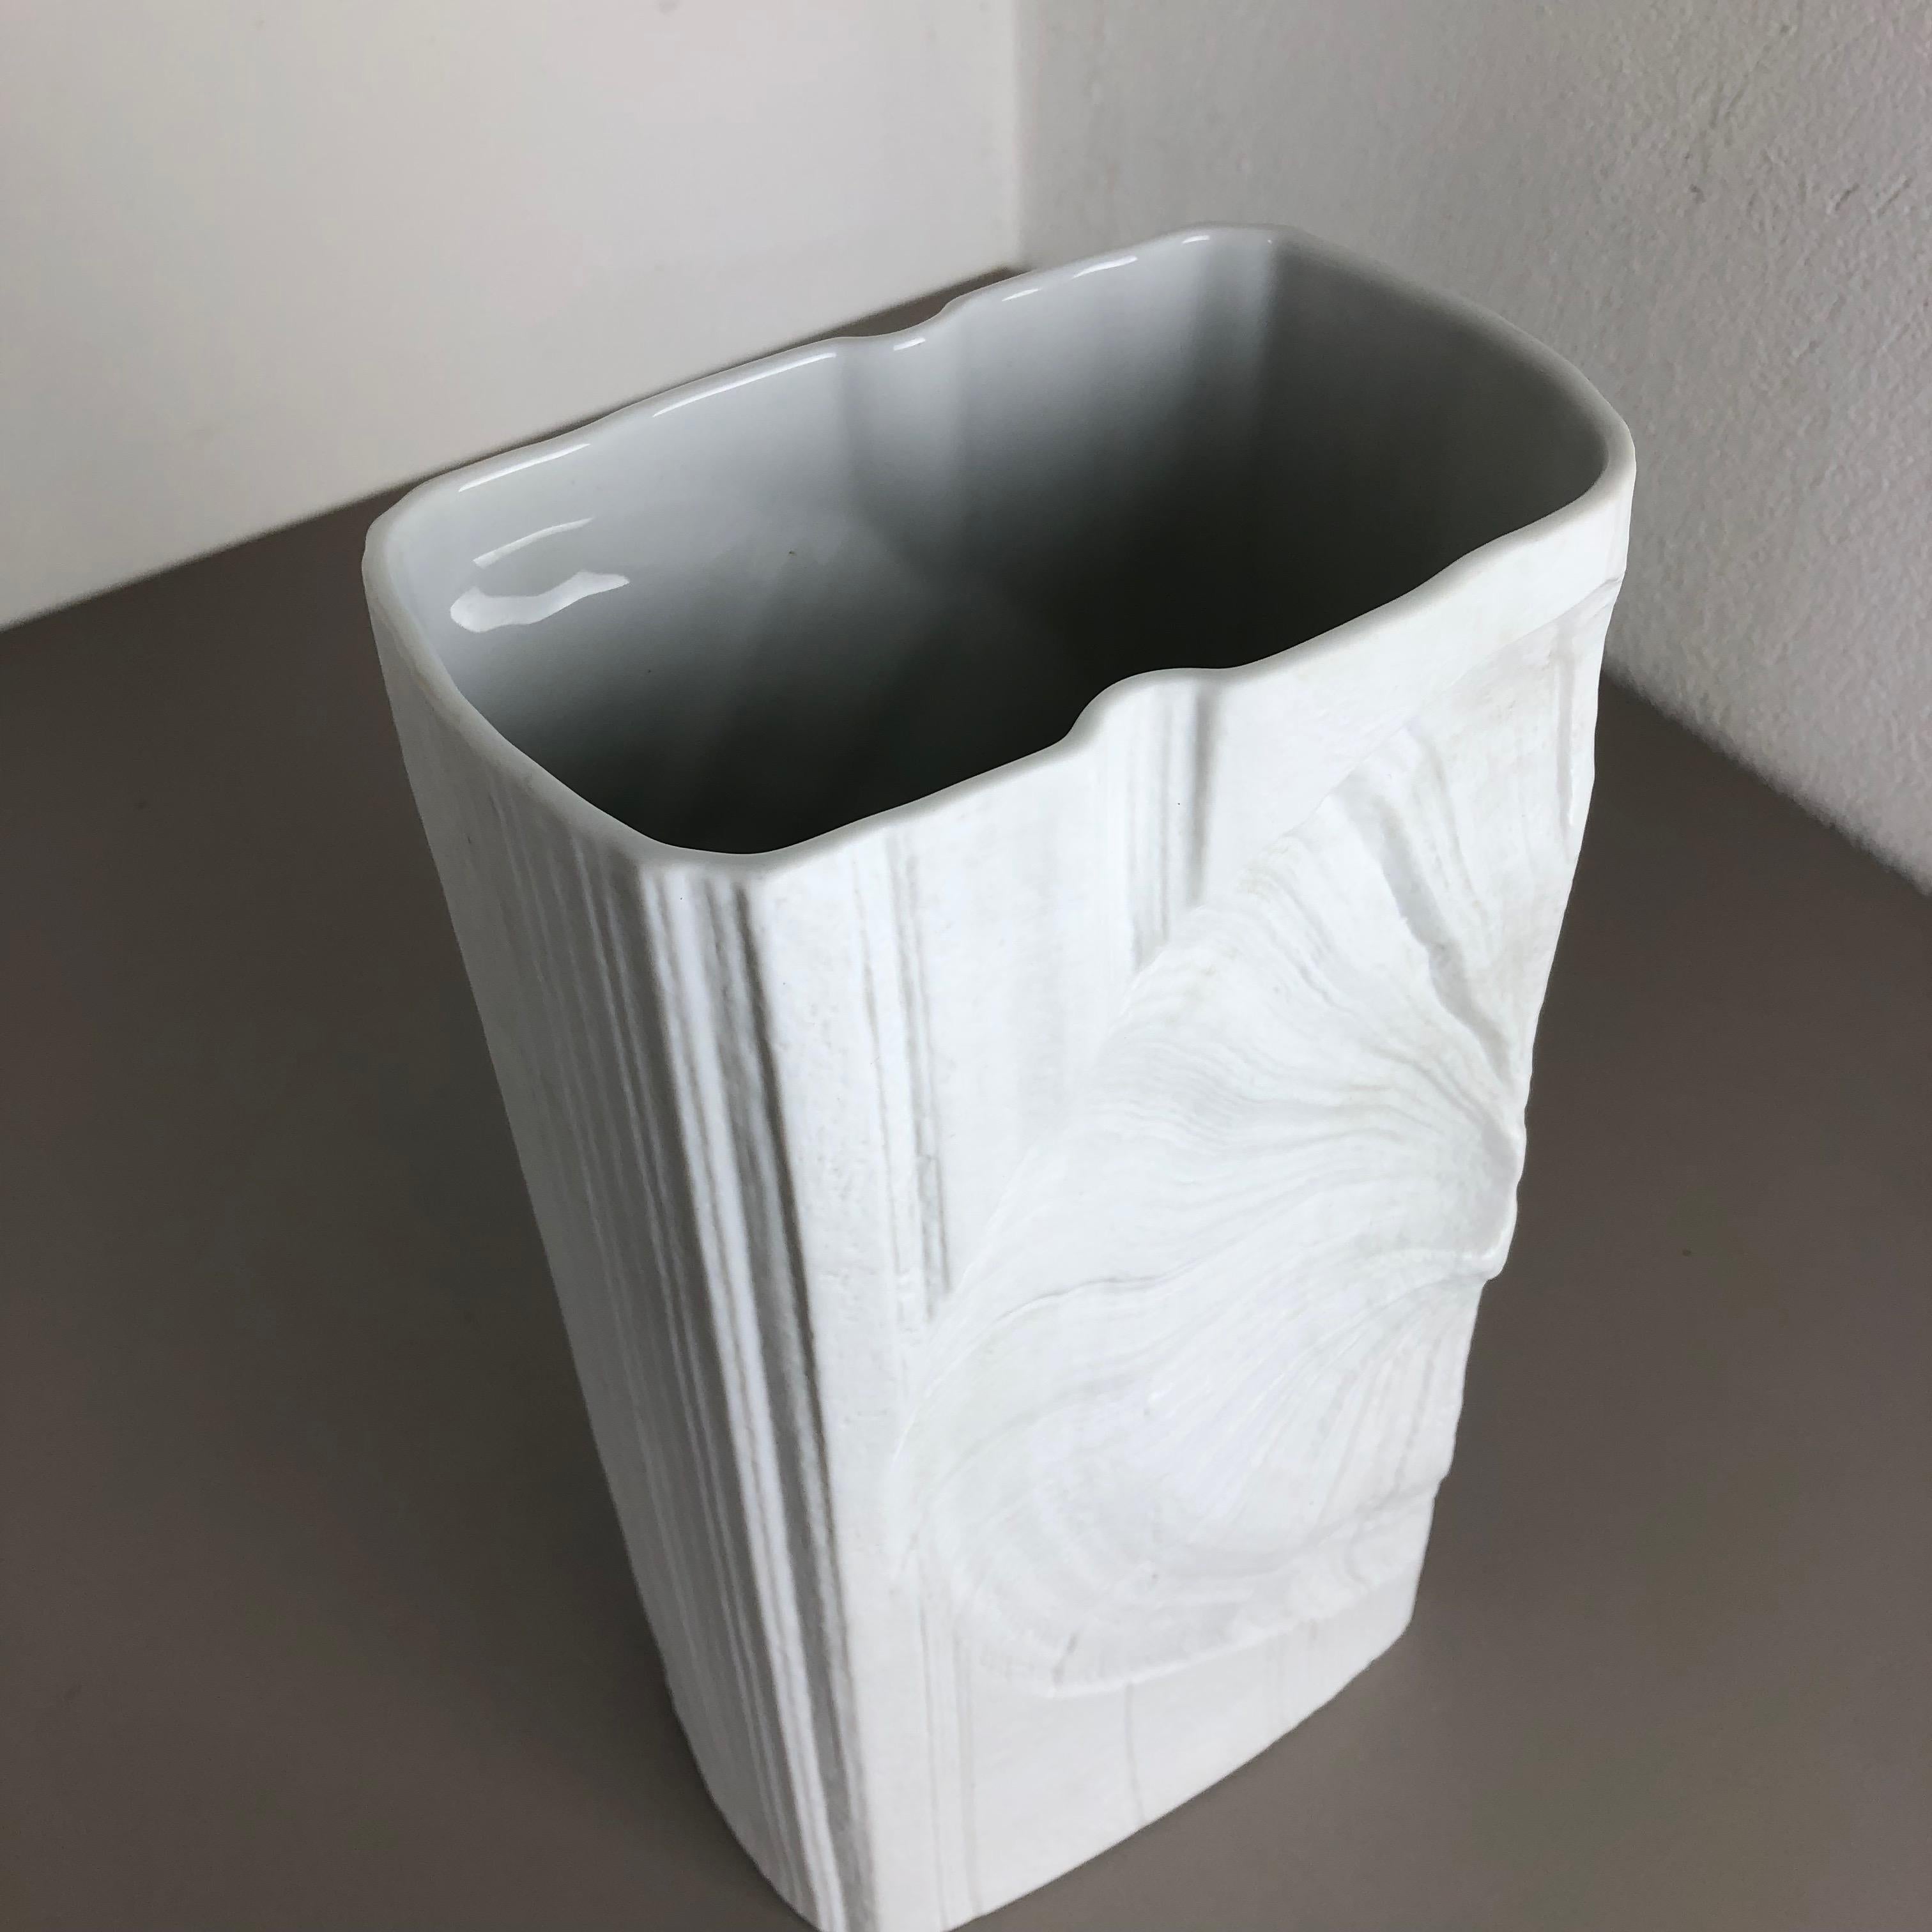 Large OP Art Vase Porcelain German Vase by Martin Freyer for Rosenthal 2